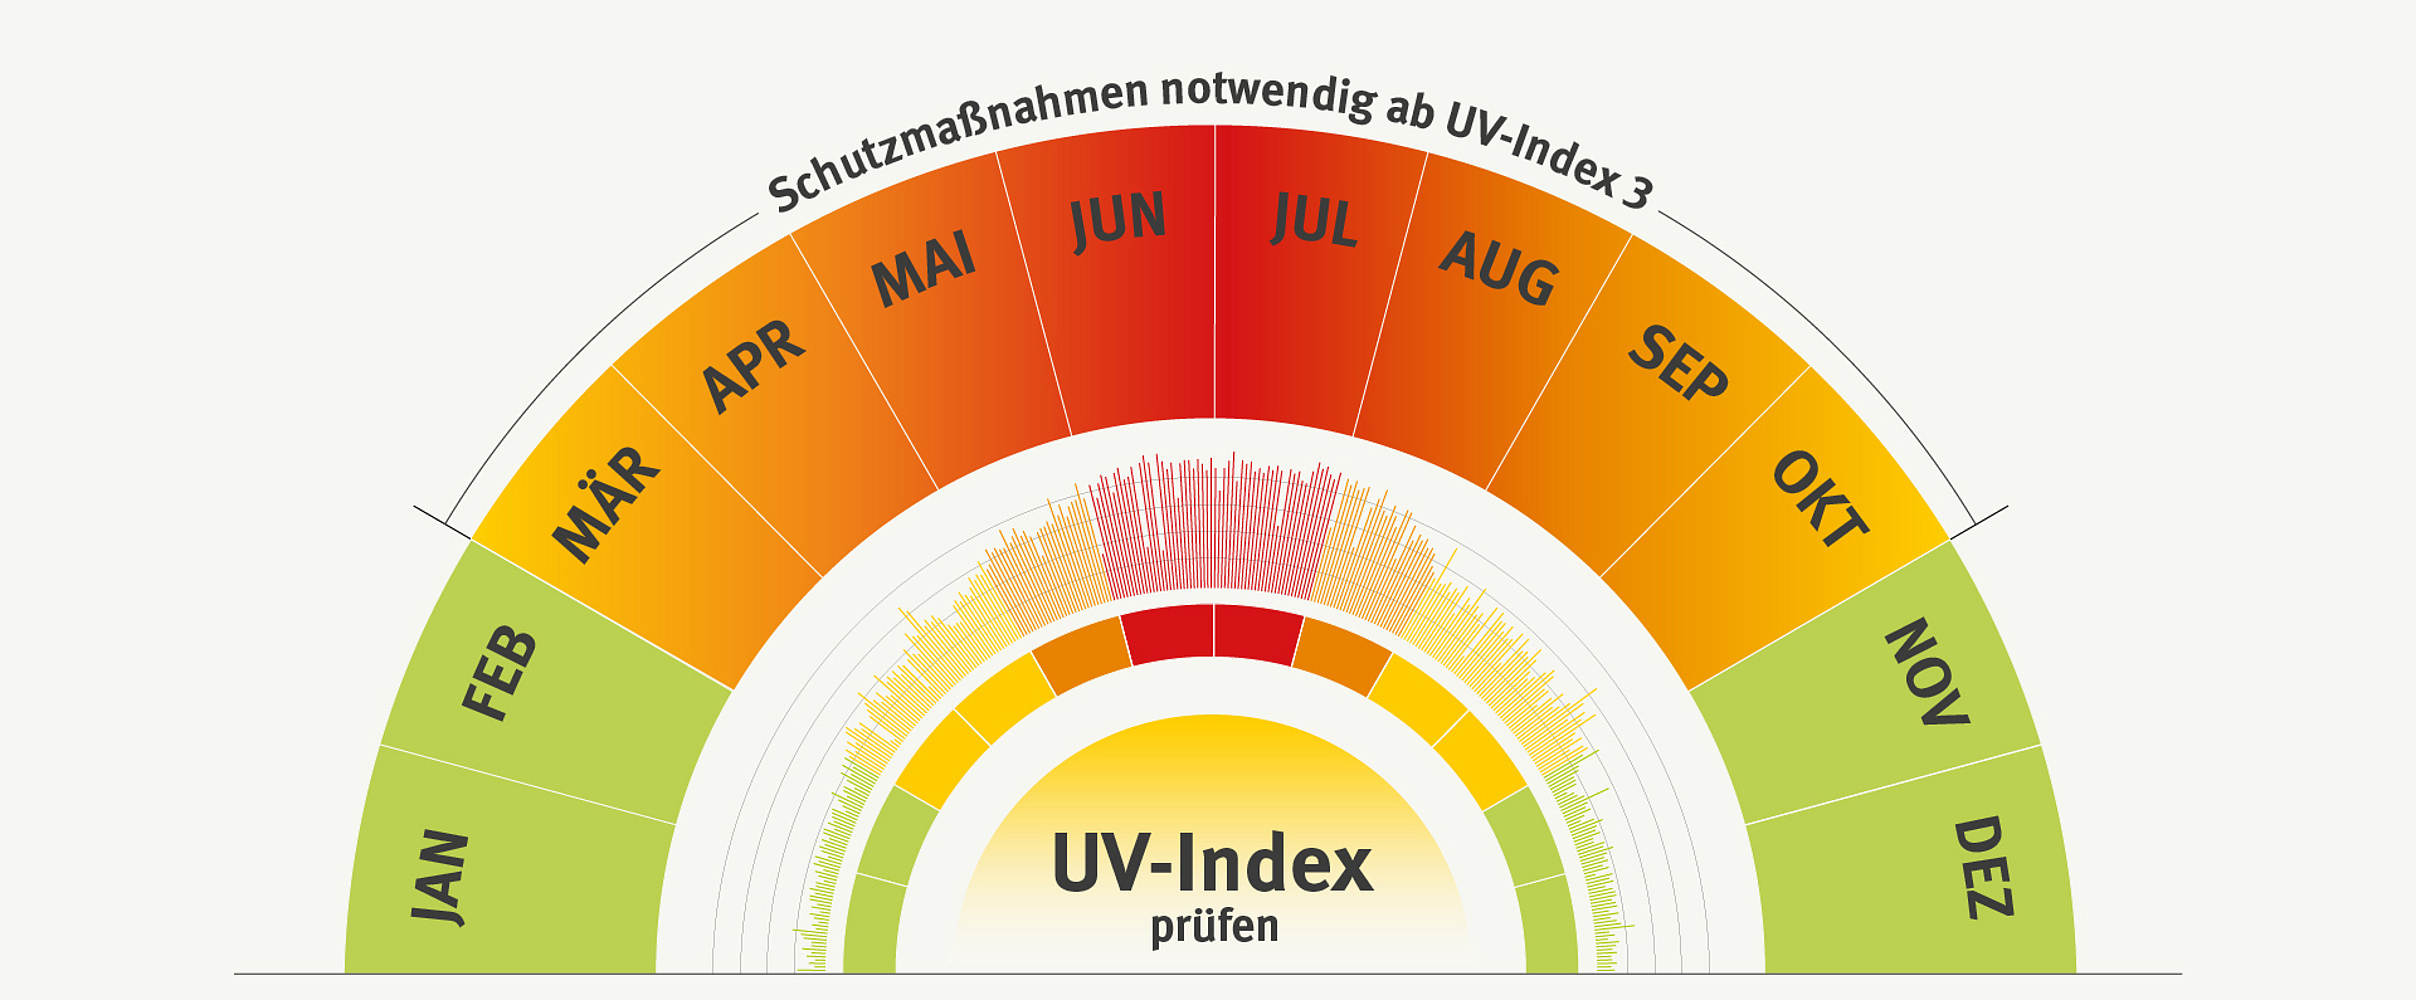 Grafik zum UV-Index in Form eines Halbkreises, der in Monate unterteilt ist. Der UV-Index zeigt pro Monat, wann die Gefahr vor UV-Strahlung am Größten ist und ab wann Schutzmaßnahmen erforderlich sind.